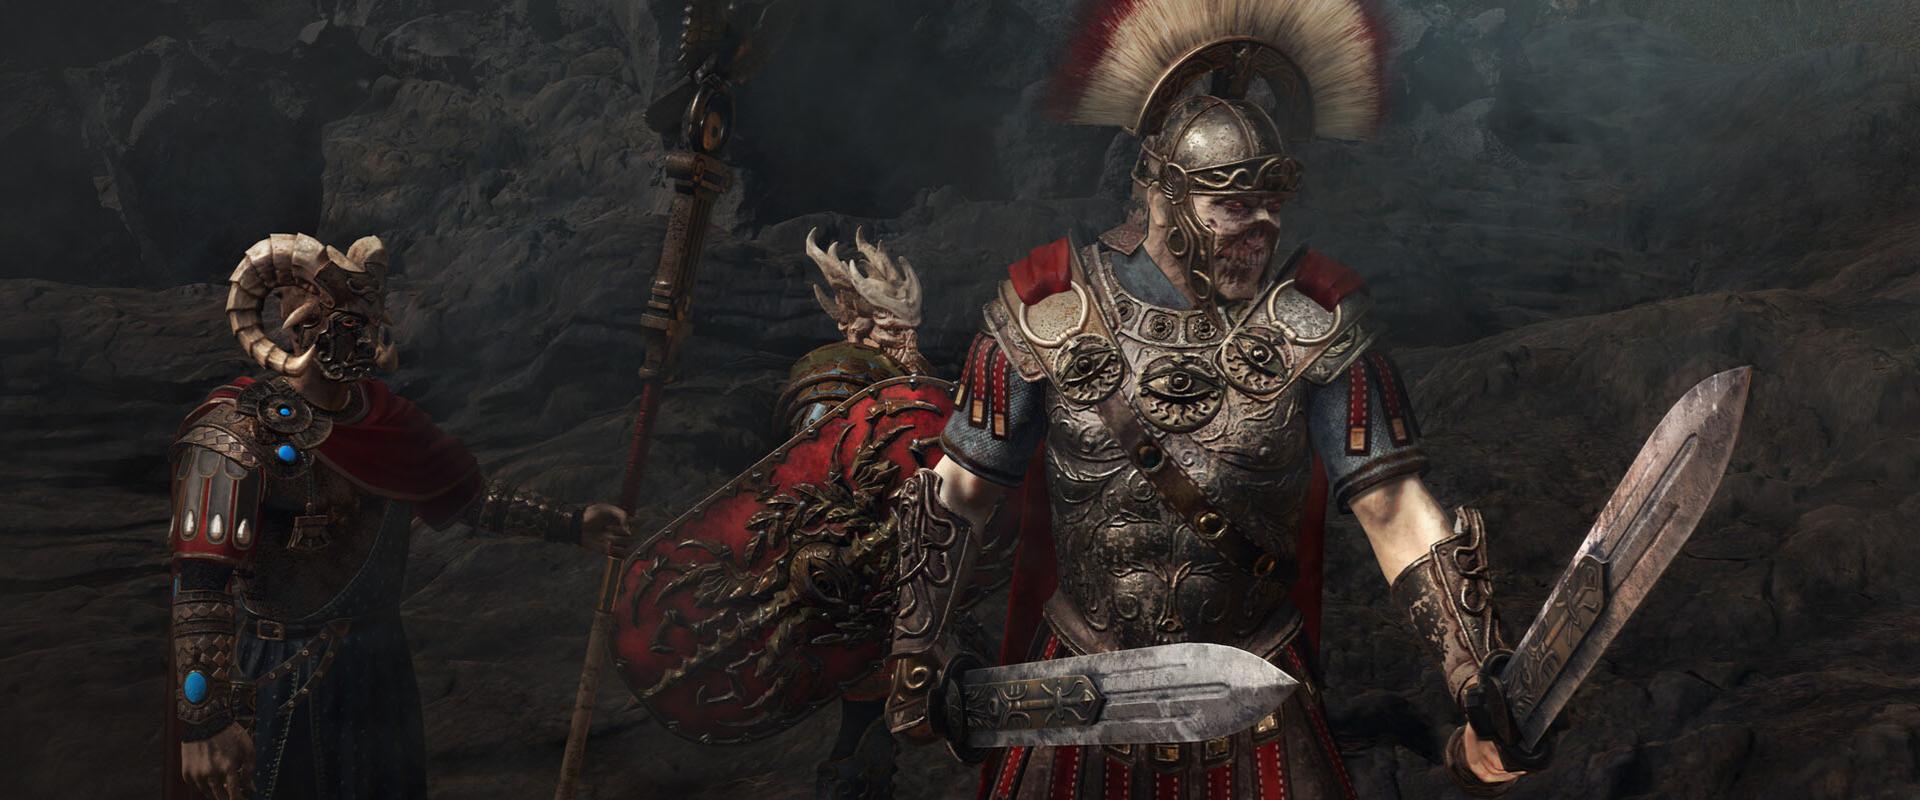 Kiderült, mikortól tolhatjuk a magyar fejlesztésű King Arthur: Legion IX-et